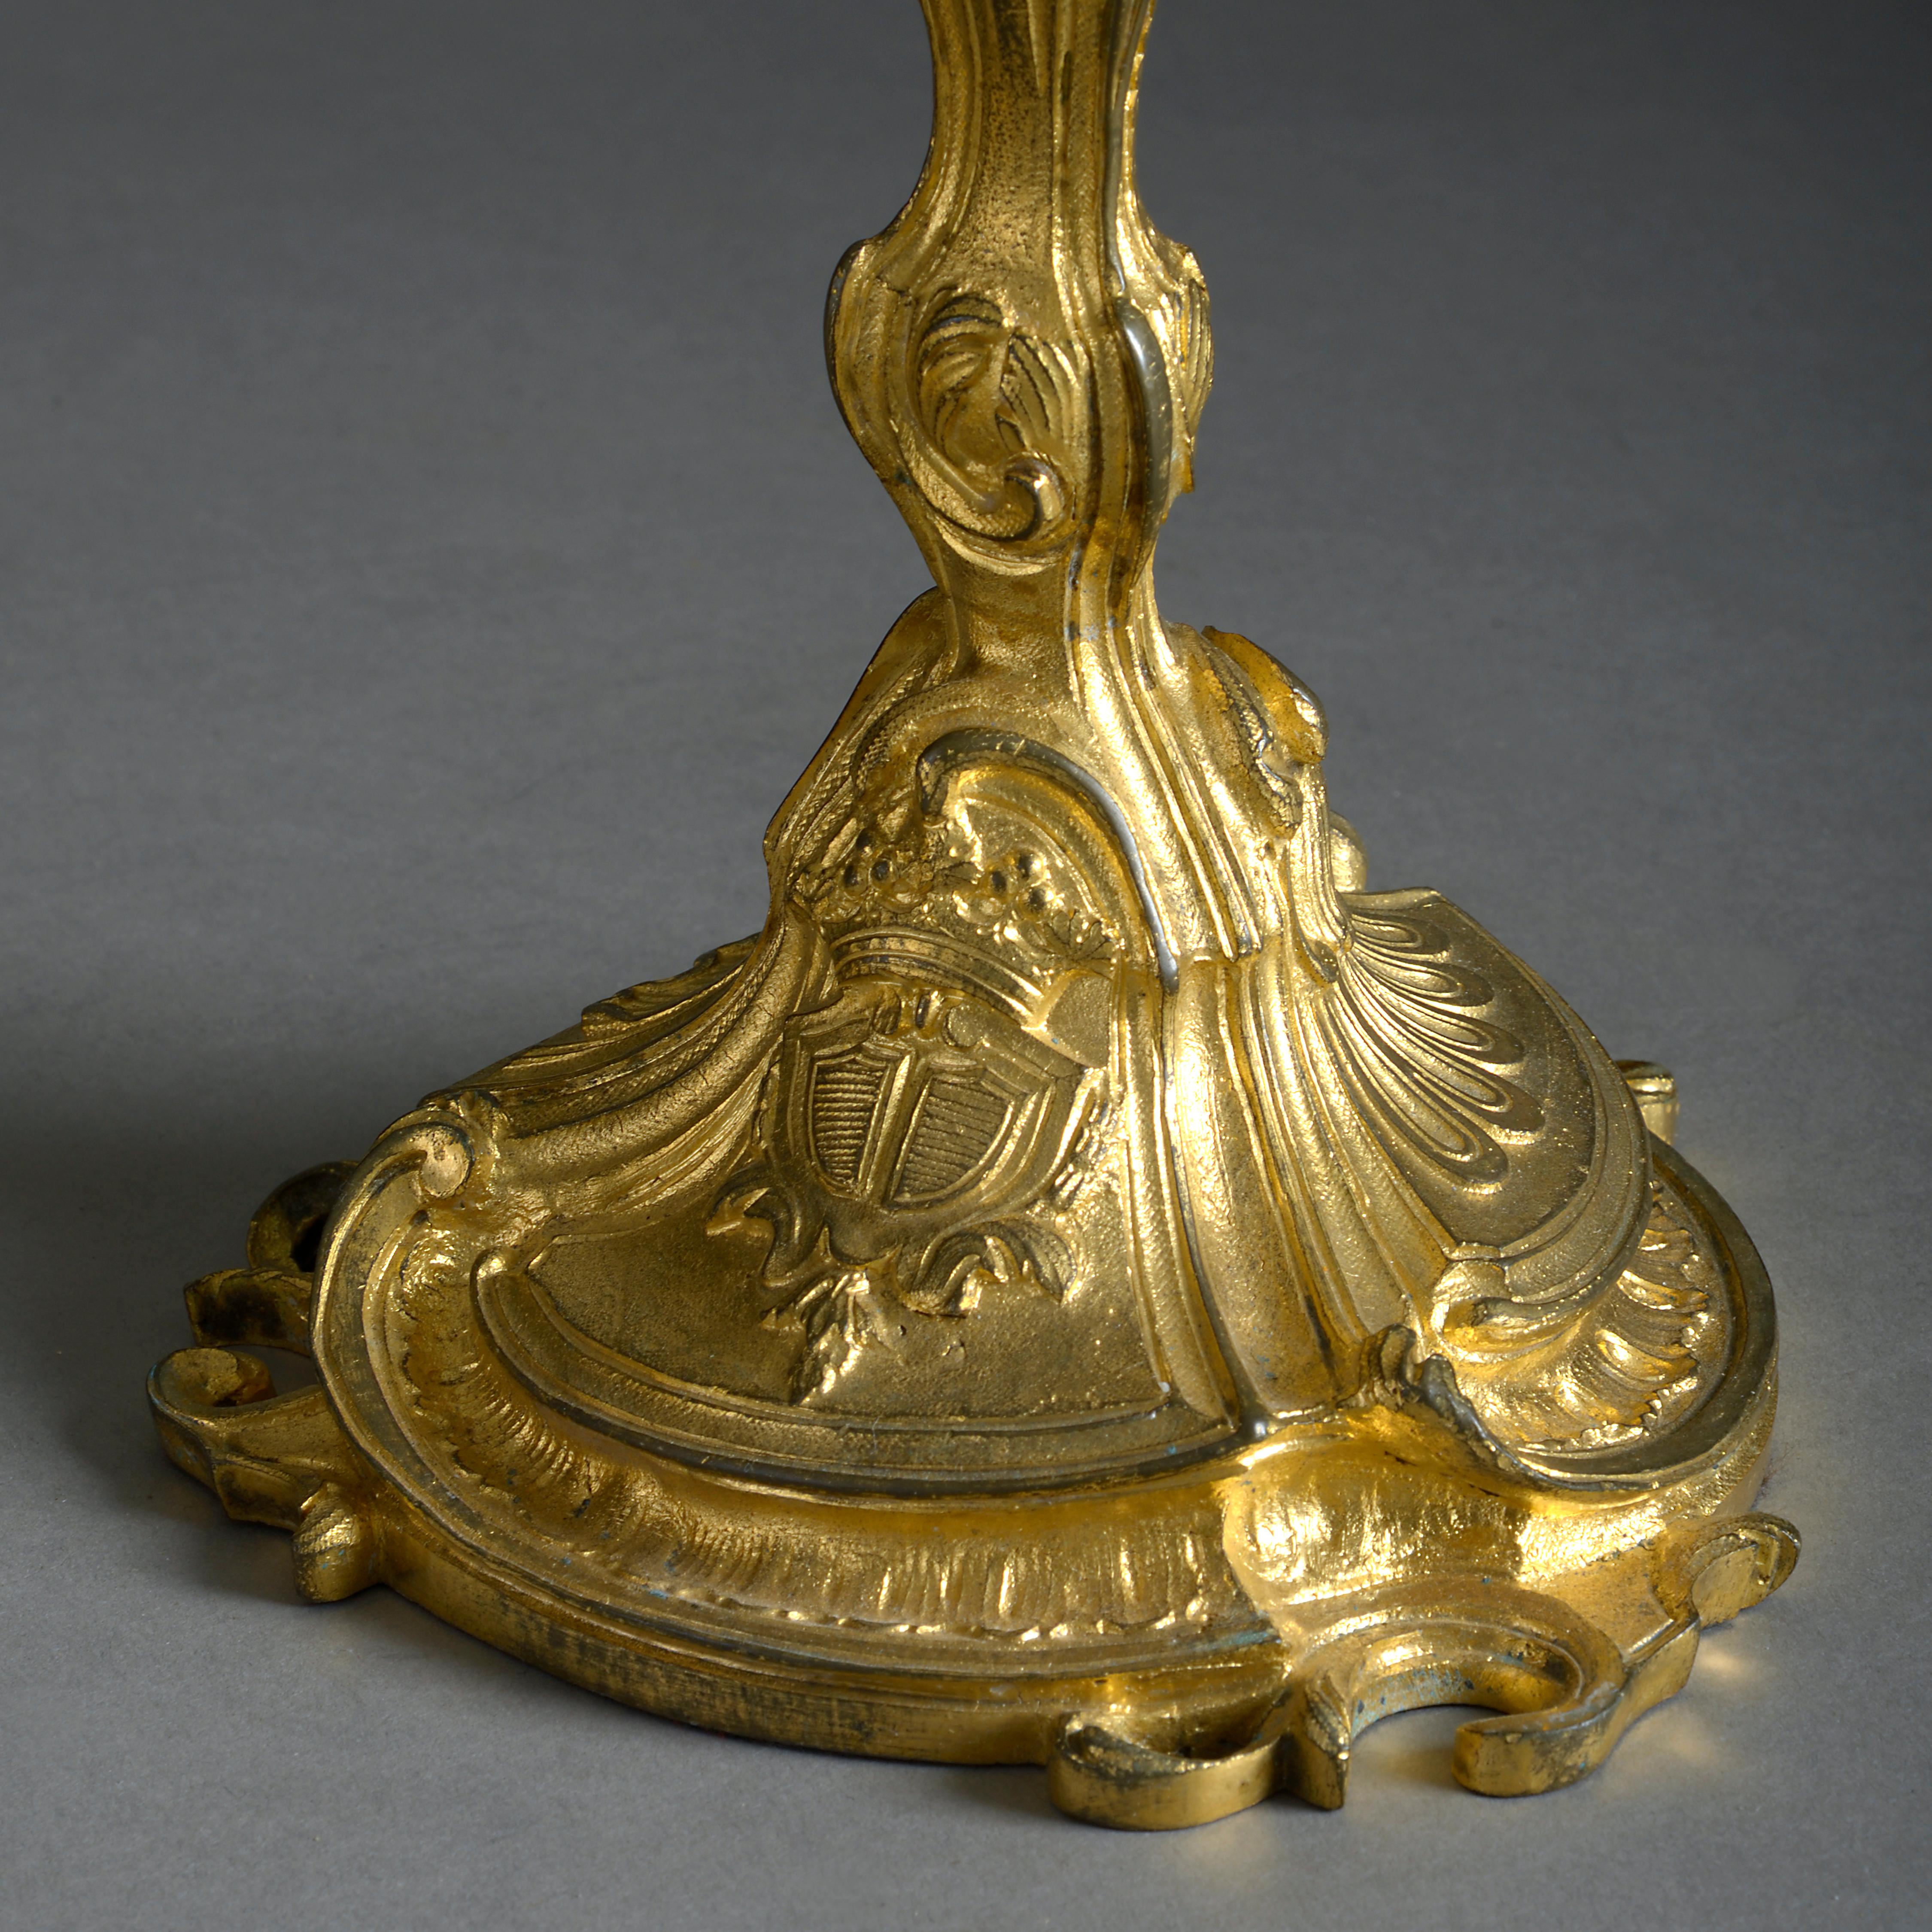 Ein Paar fein gegossene und ziselierte Ormolu-Kerzenhalter im Louis-XV-Rokokogeschmack, jetzt als Tischlampen für elektrische Beleuchtung montiert.

Das Höhenmaß bezieht sich nur auf antike Teile (ohne elektrische Komponenten).

Alle